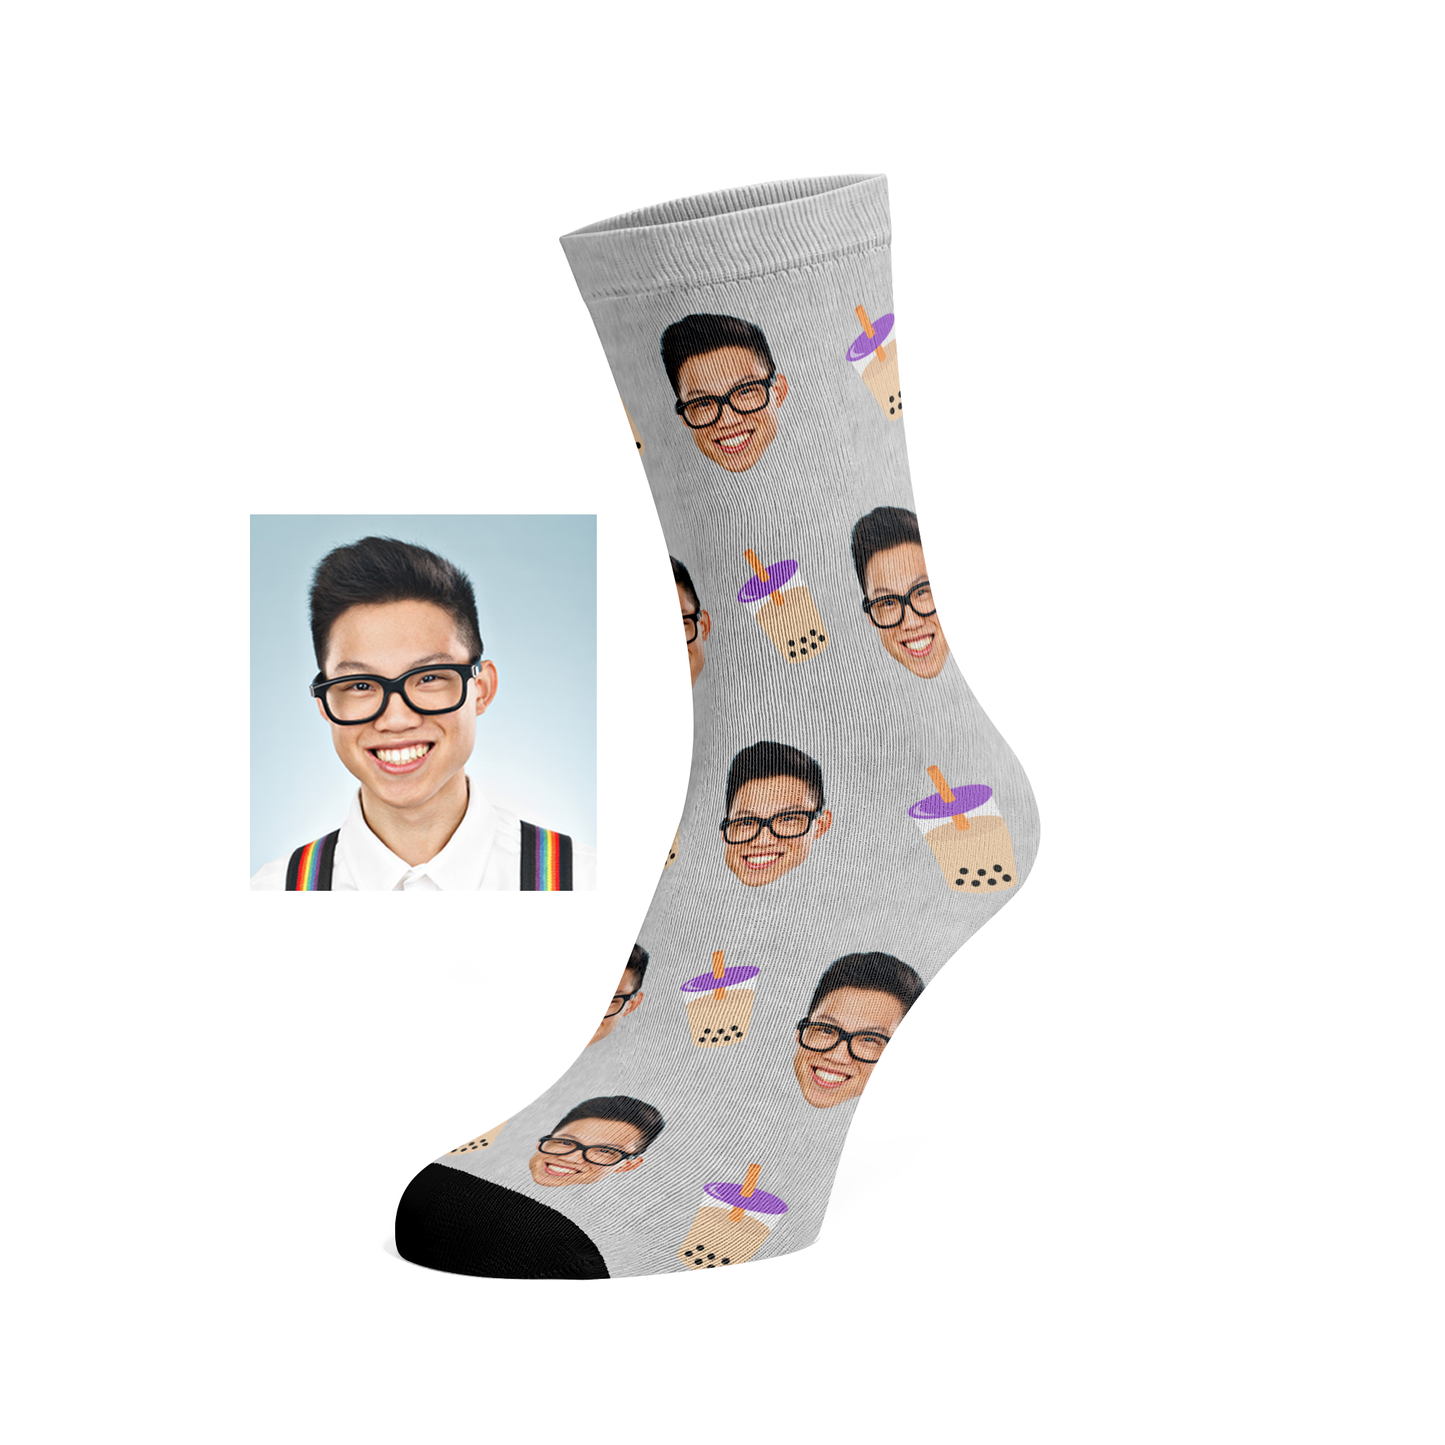 Custom Bubbletea socks